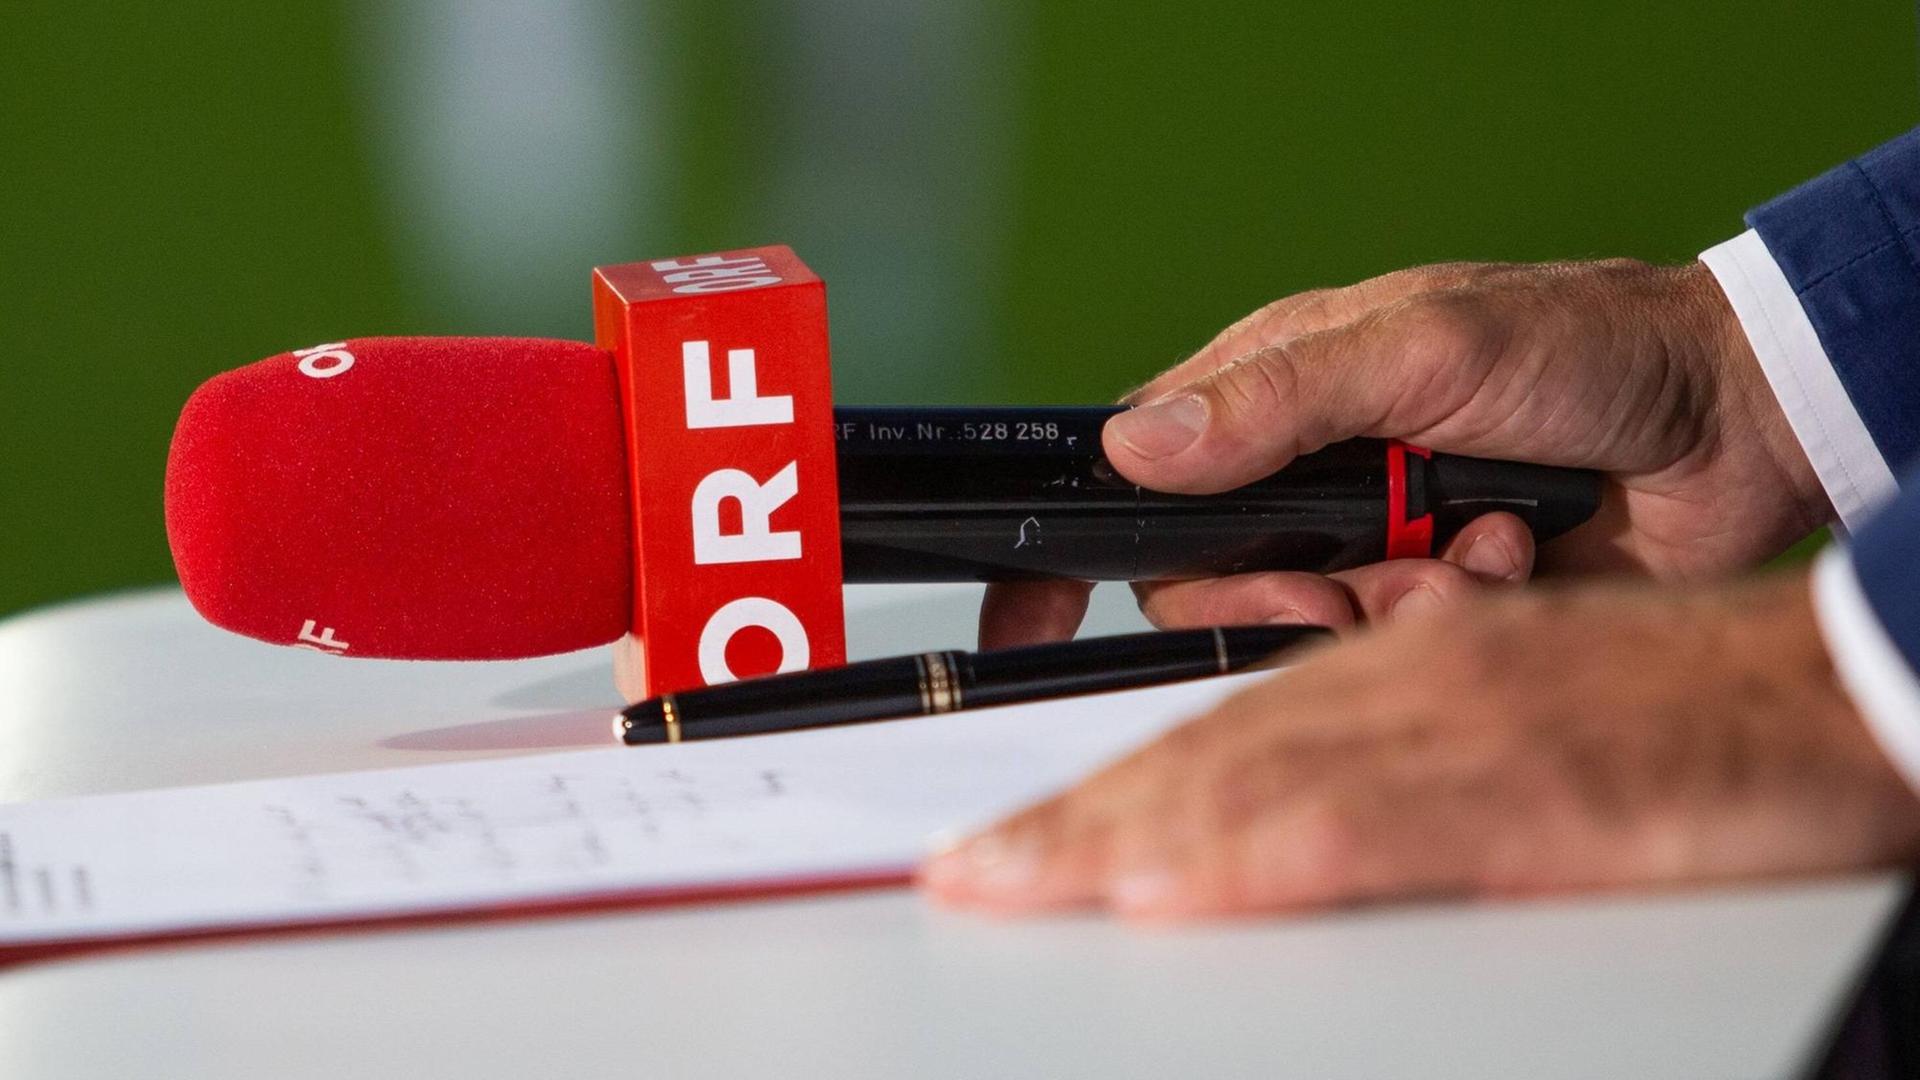 Ein Mikrofon mit der Aufschrift des österreichischen Rundfunks ORF liegt auf einem Tisch.